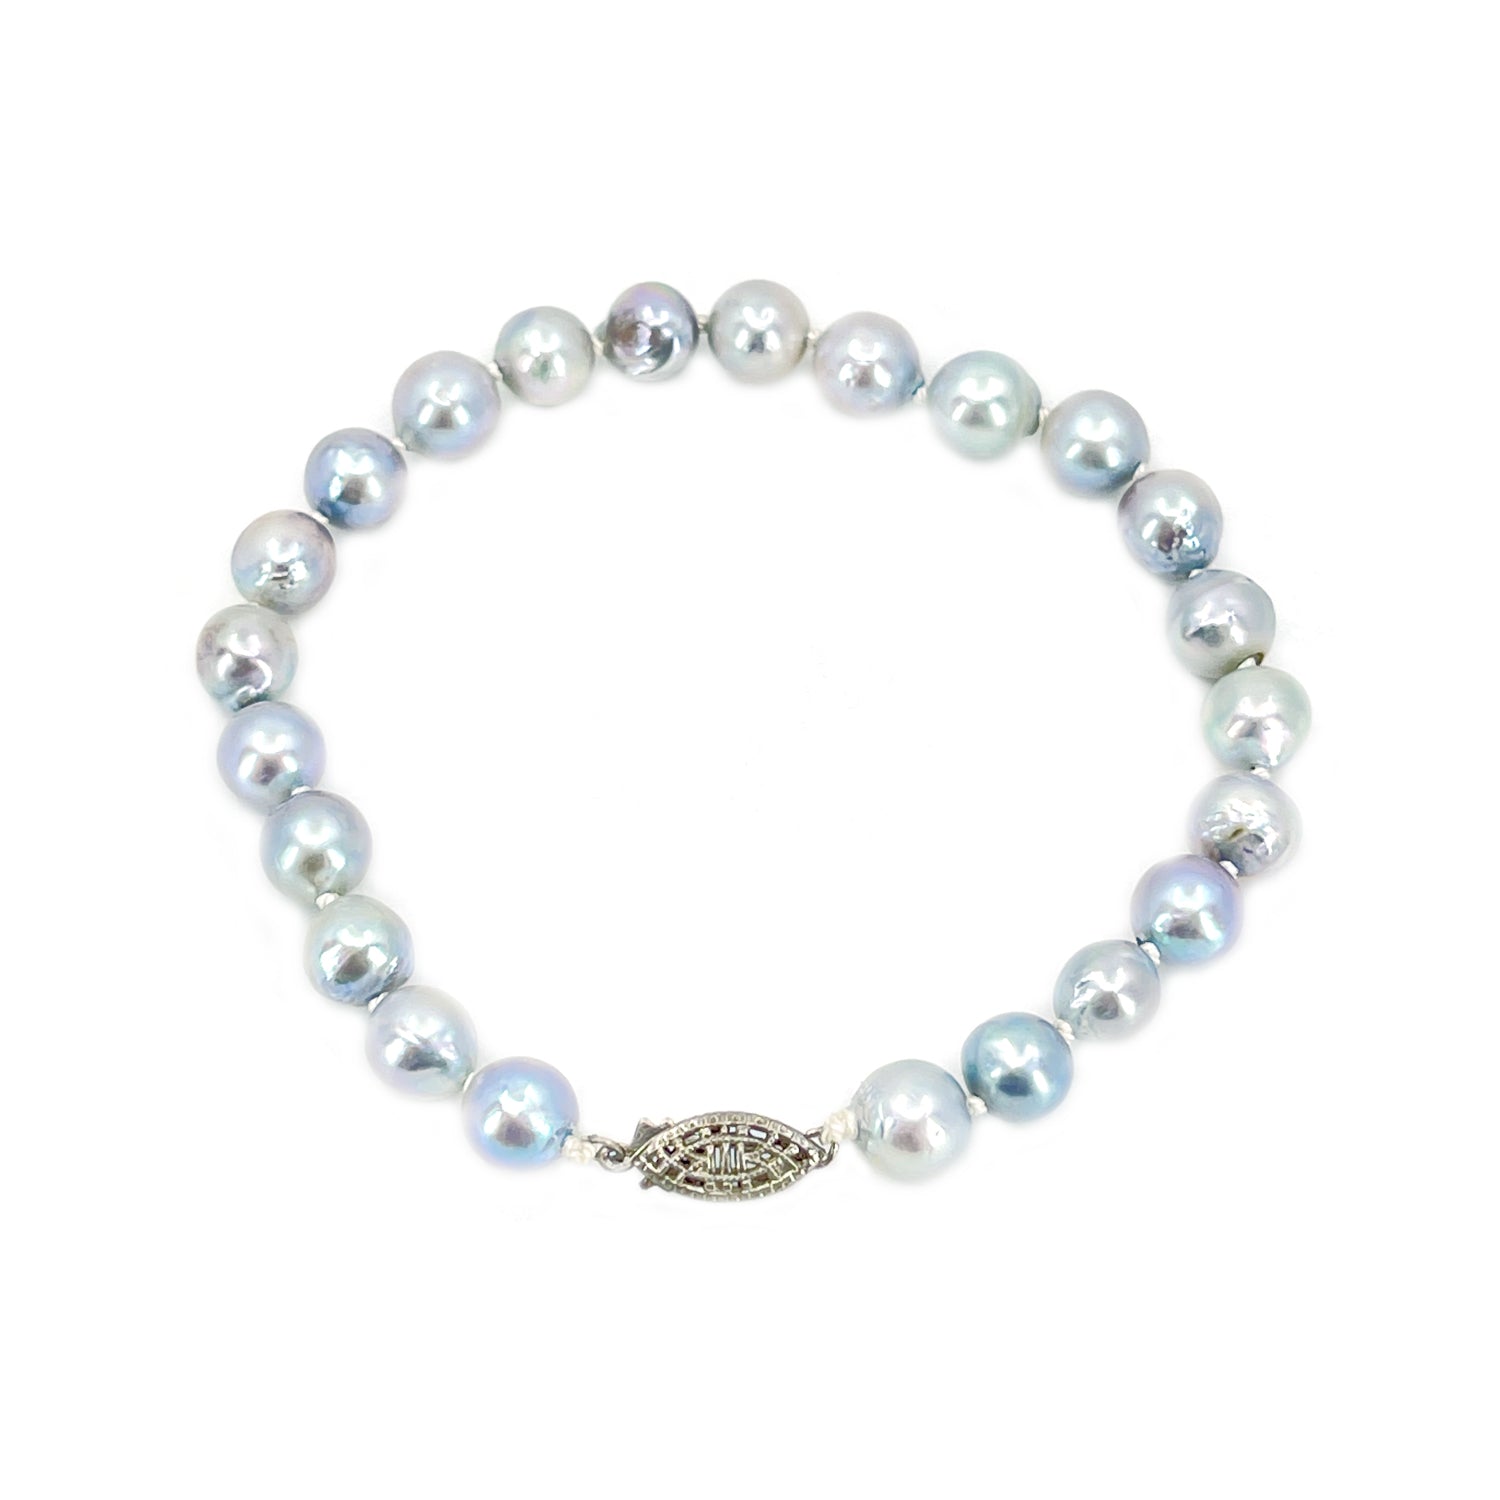 Top quality Japanese Akoya saltwater pearl vintage bracelet